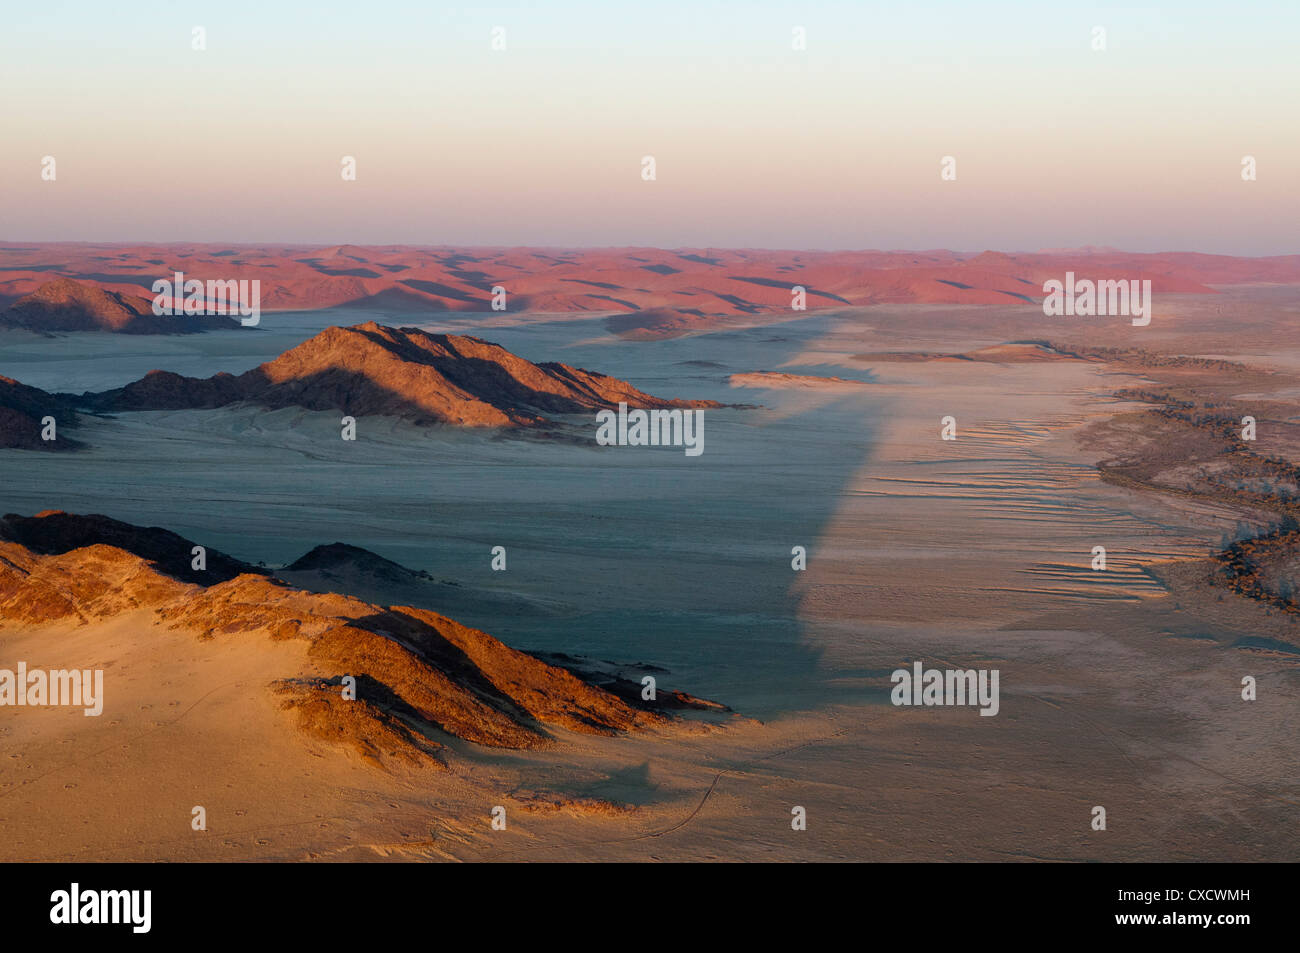 Luftaufnahme, Namib-Naukluft-Park, Namib-Wüste, Namibia, Afrika Stockfoto